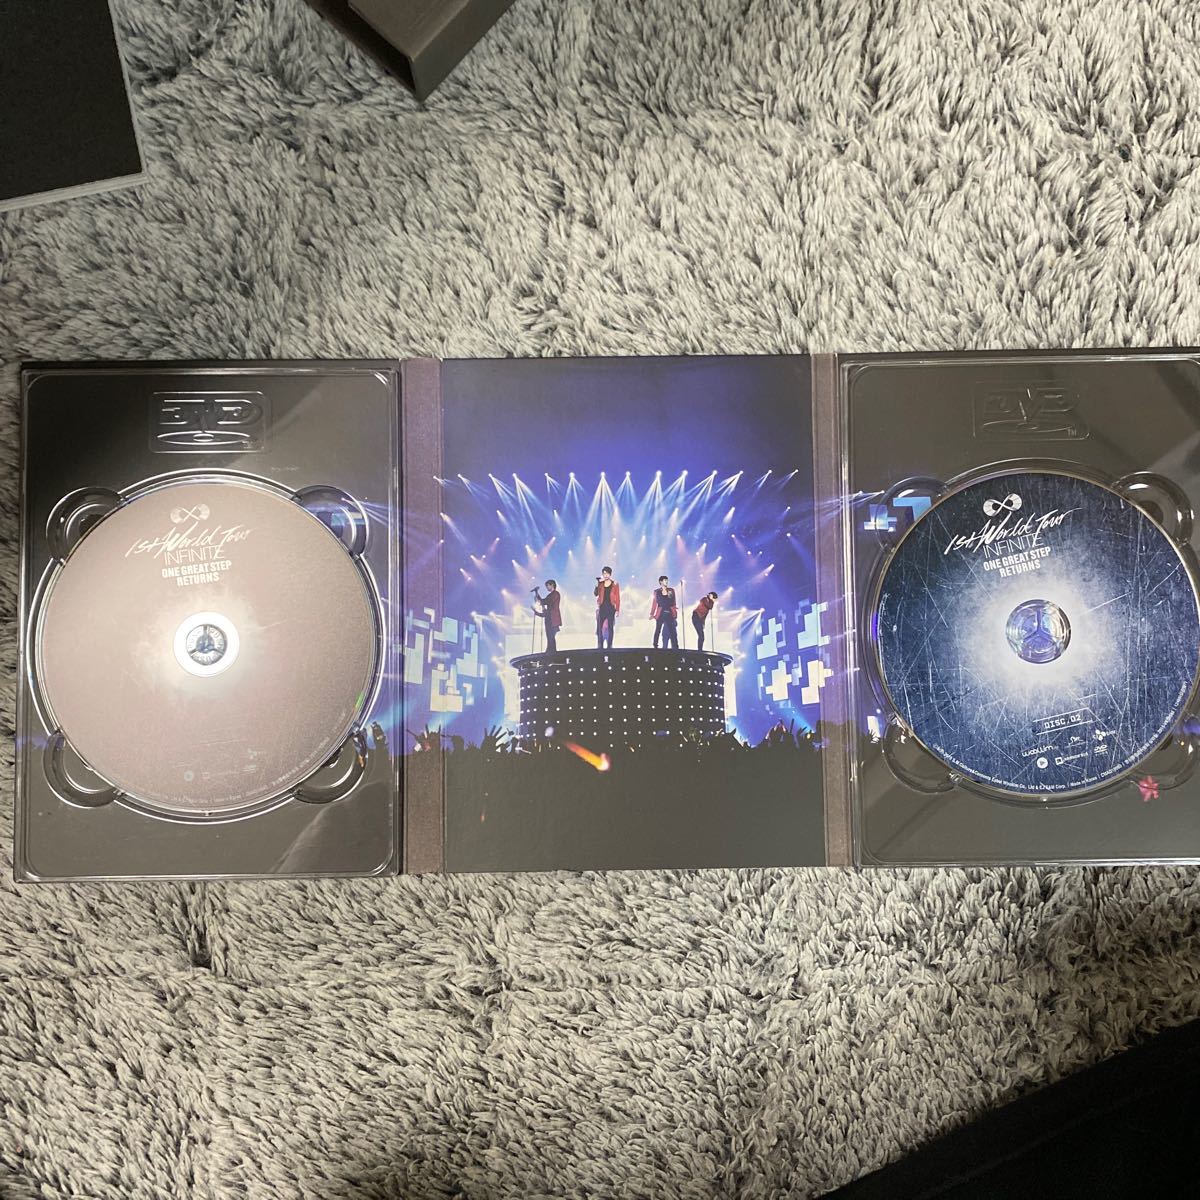 Infinite One Great Step Returns (2DVD + フォトブック) (韓国盤)日本語字幕版